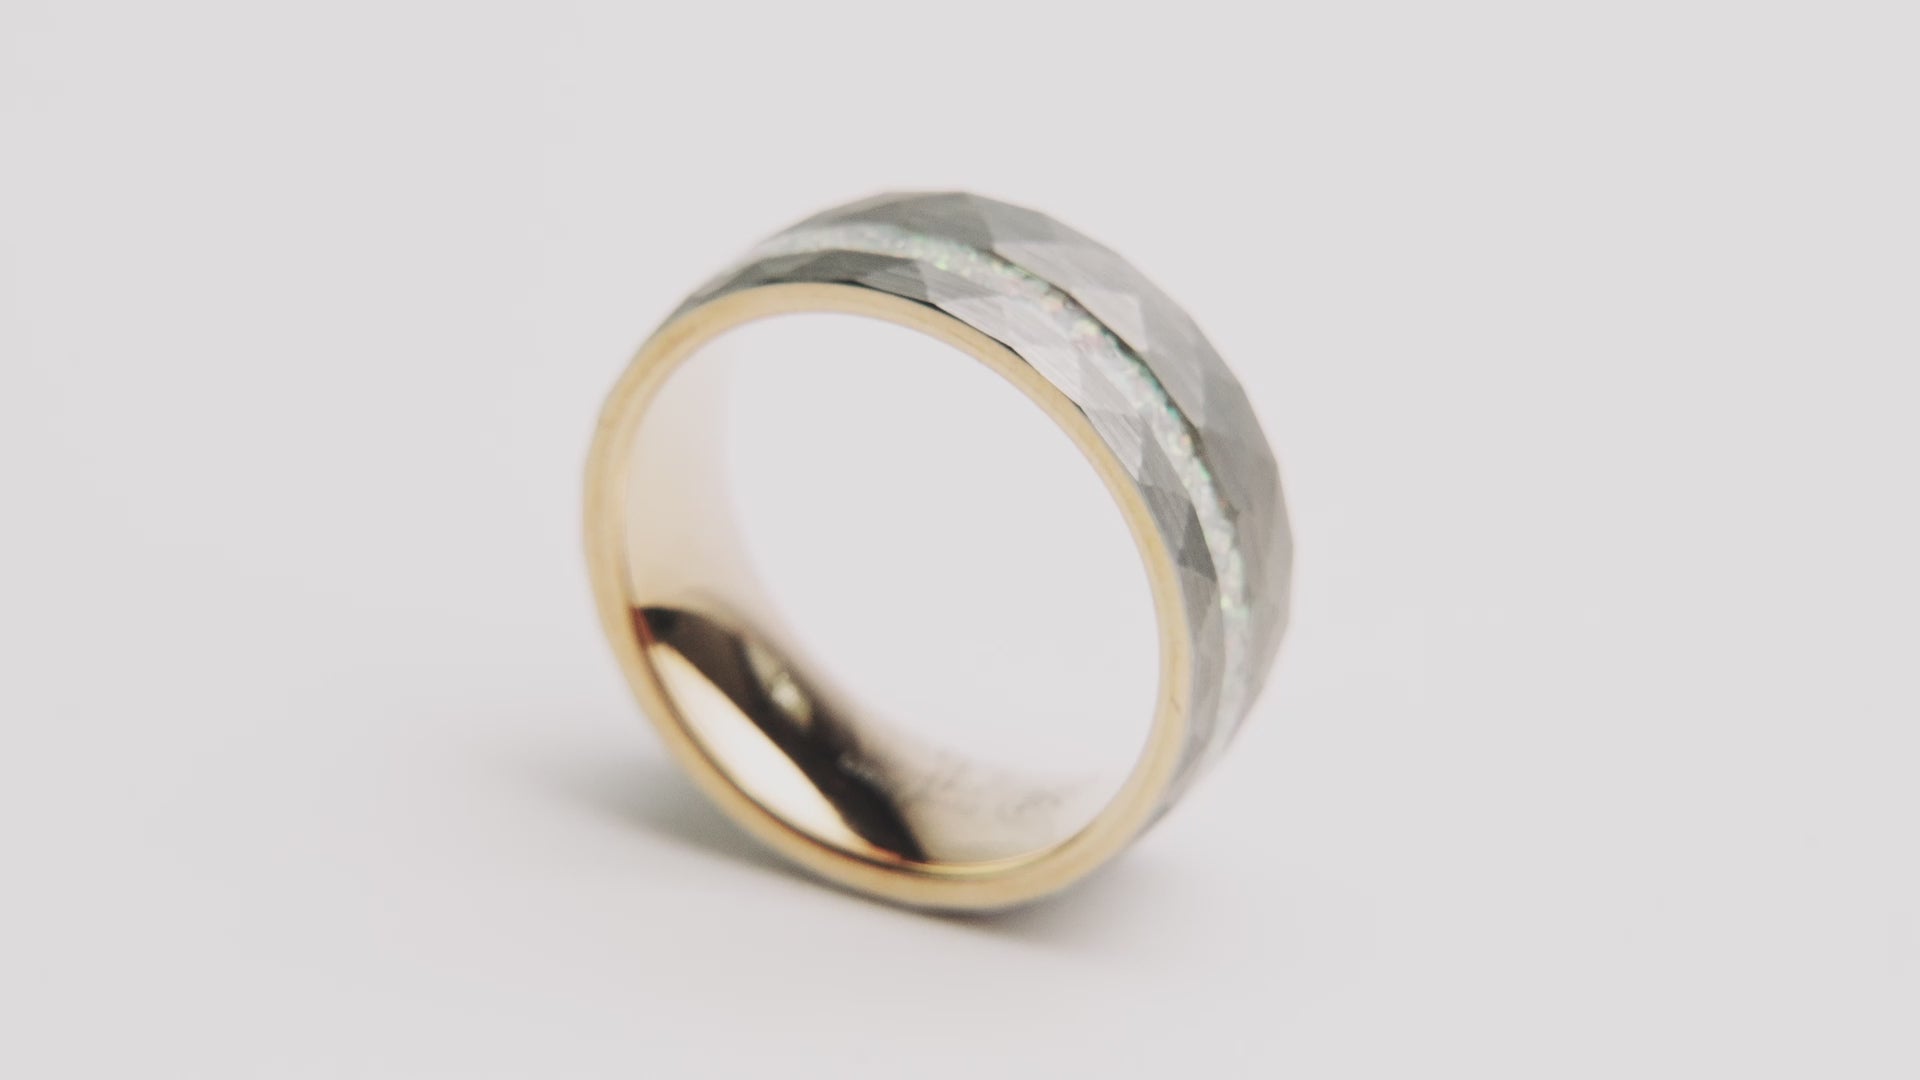 The “Zeus” Ring